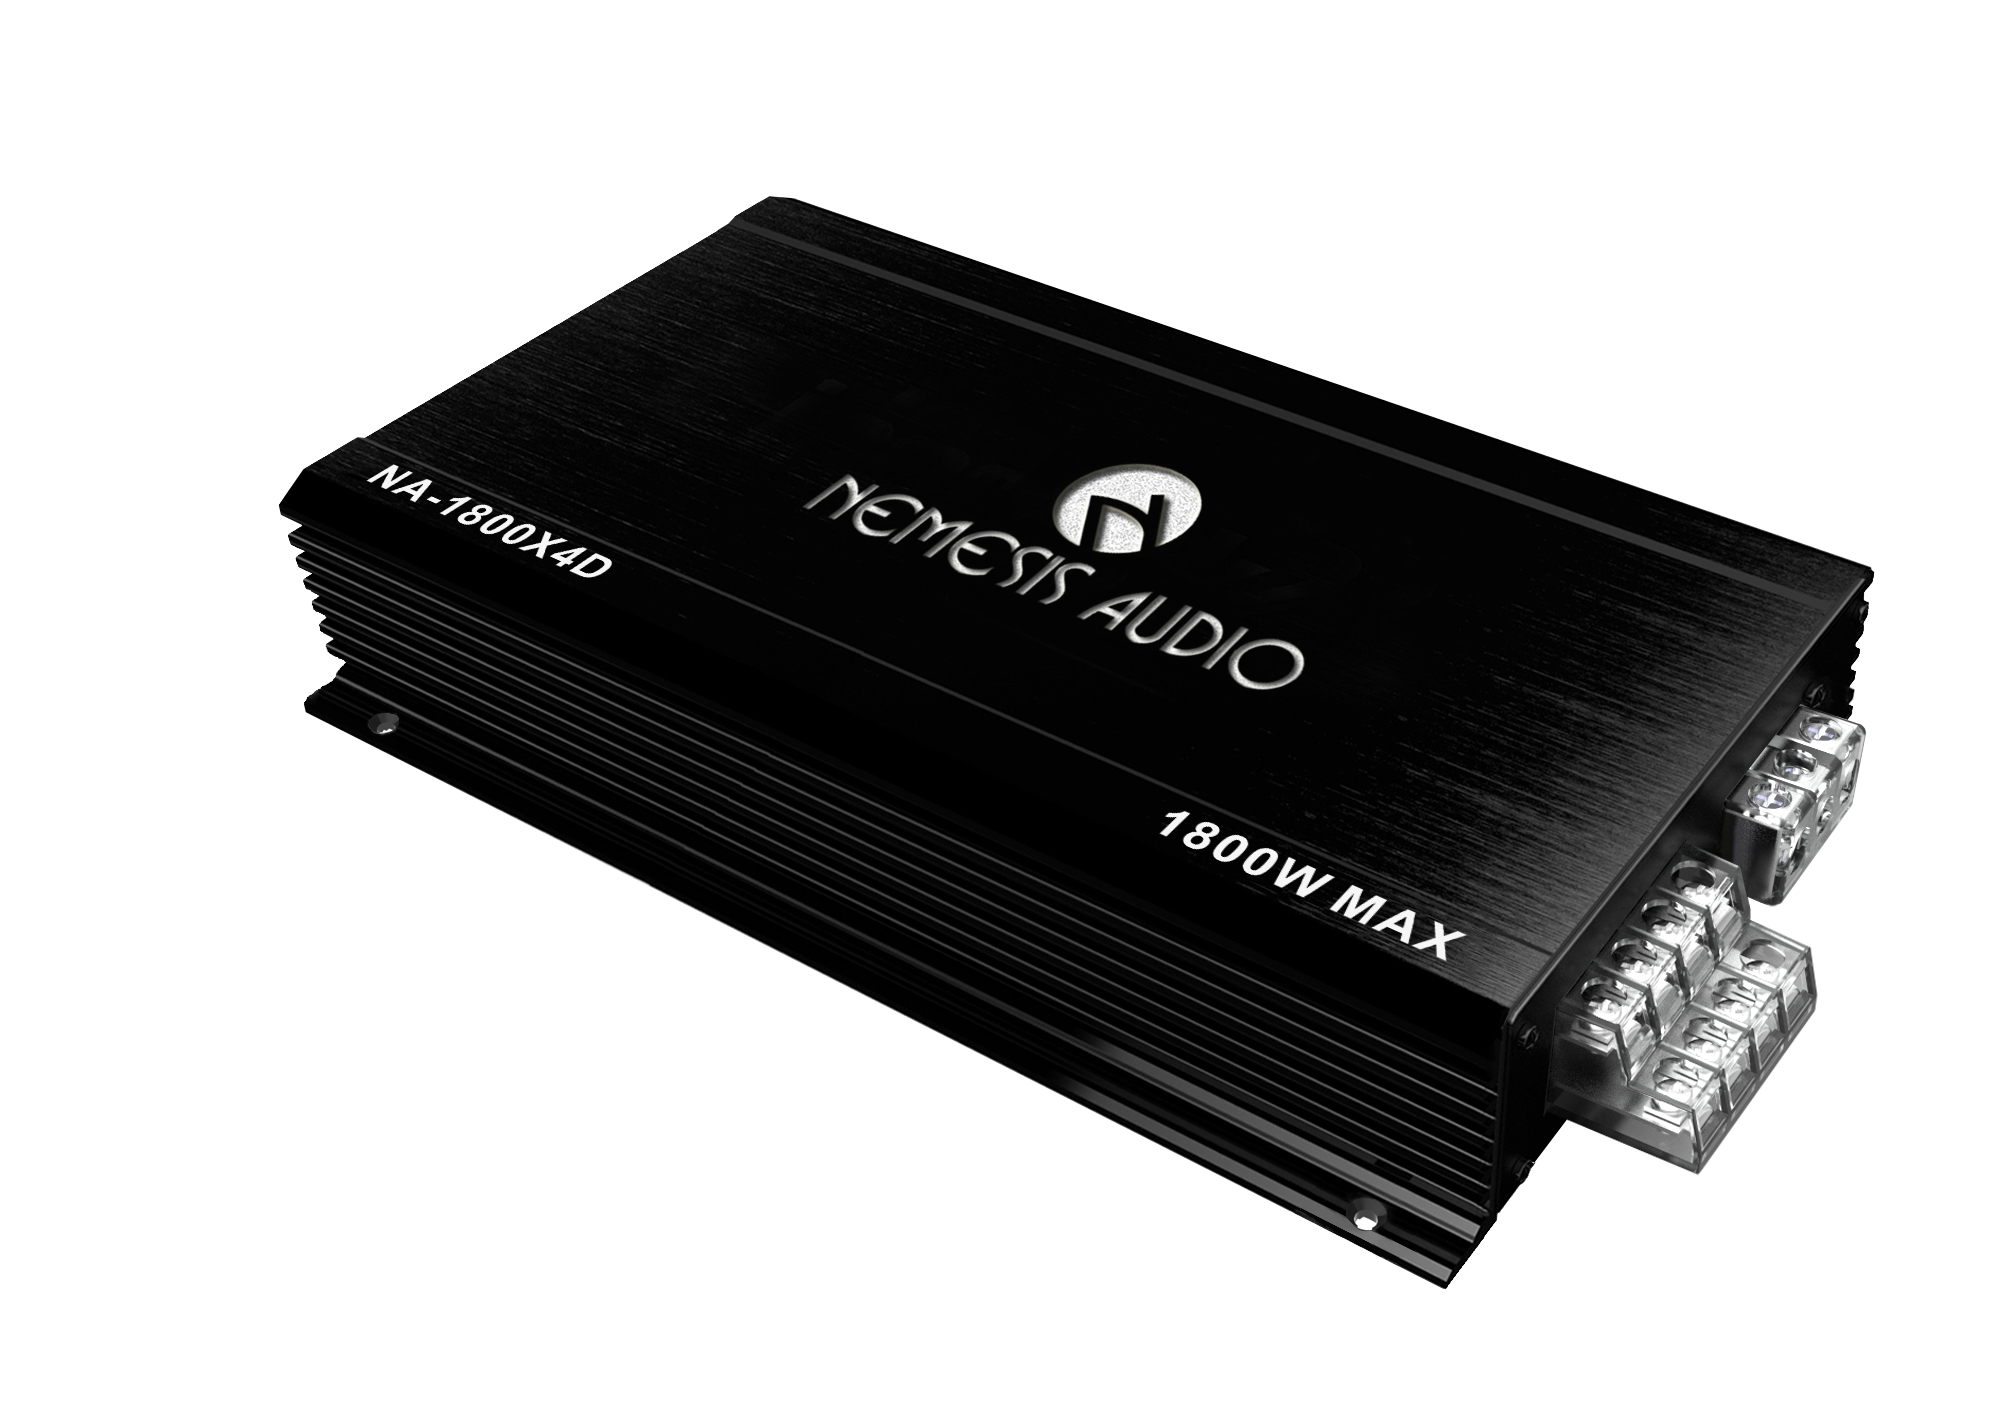 NA-1800X4D: